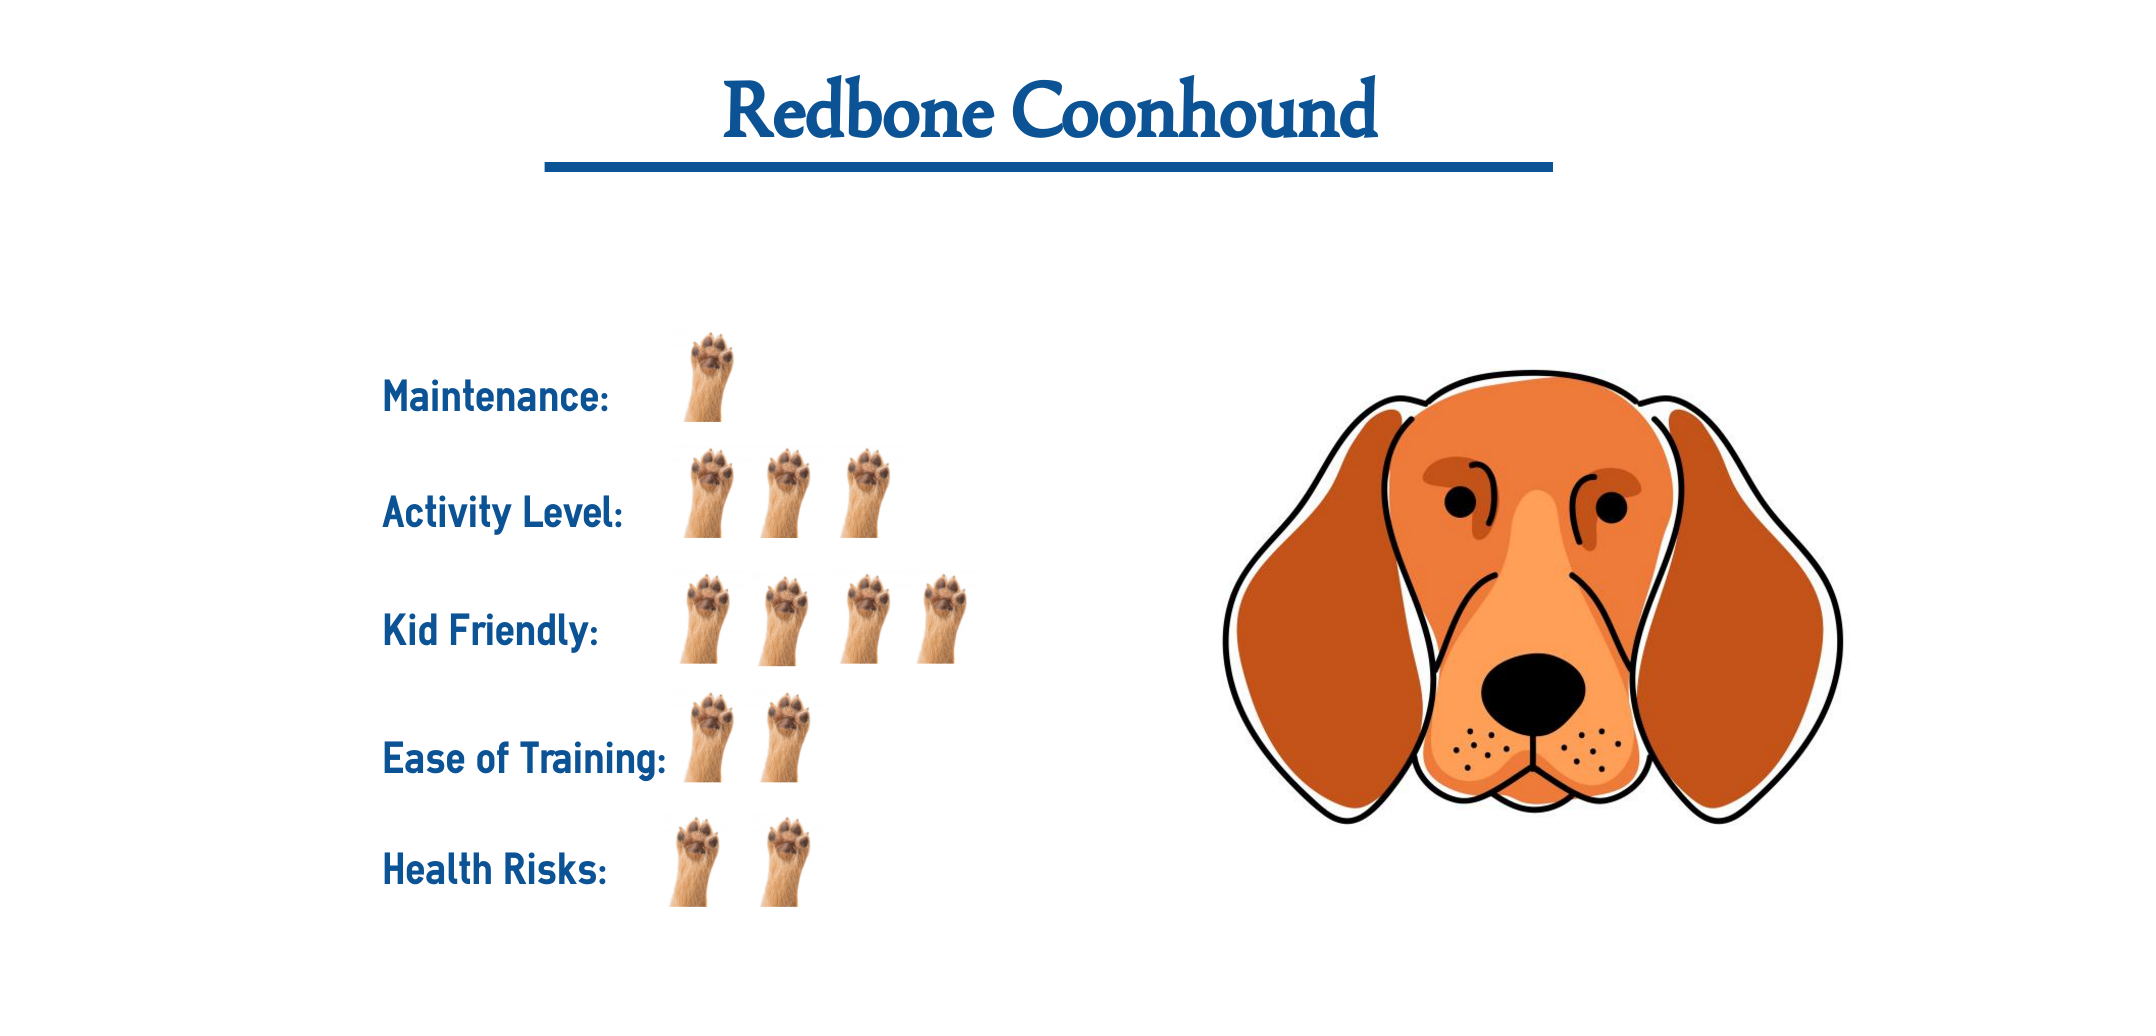 redbone coonhound facts